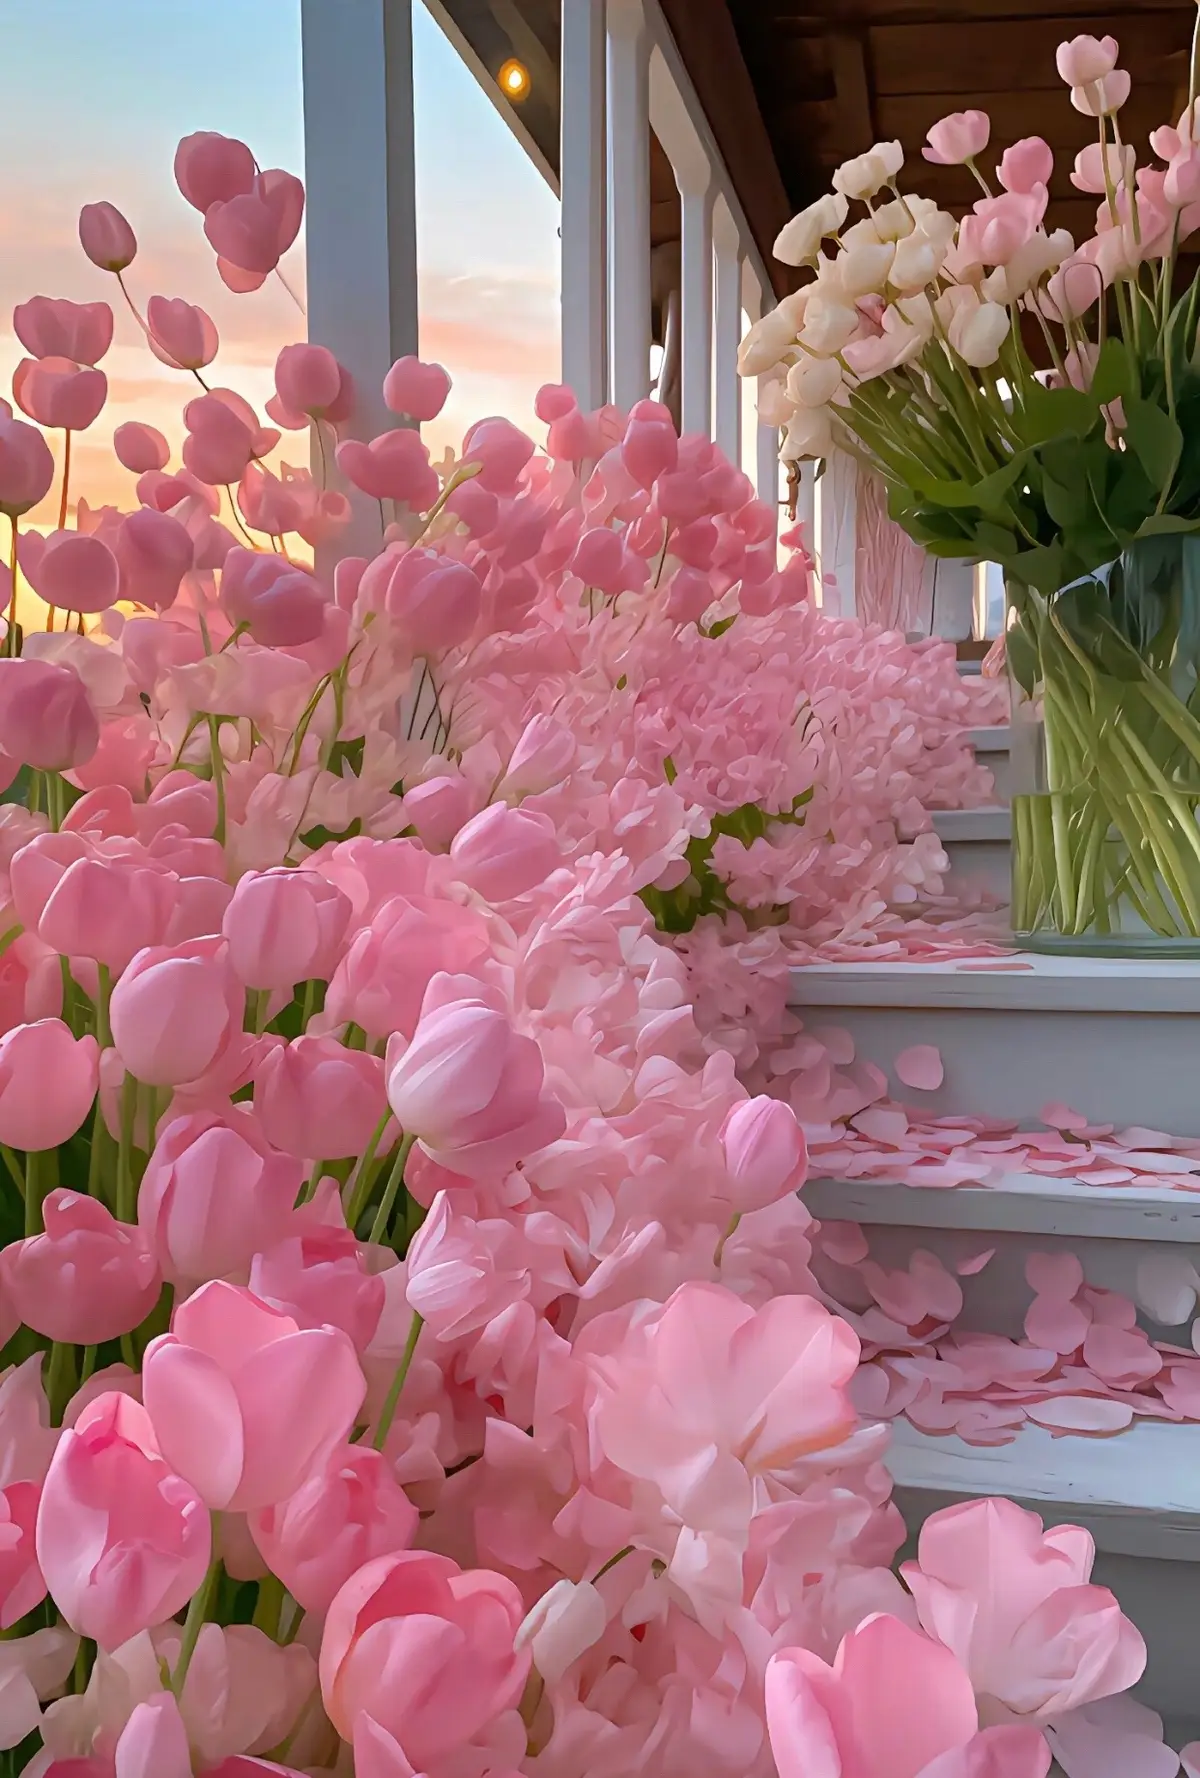 Lưu ngay ảnh về làm hình nền mới thui nào😘 #hoadep #hinhnen #tulip #hoa #flowers #xuhuong #trending #meo4599 #anhnen #anhdep 